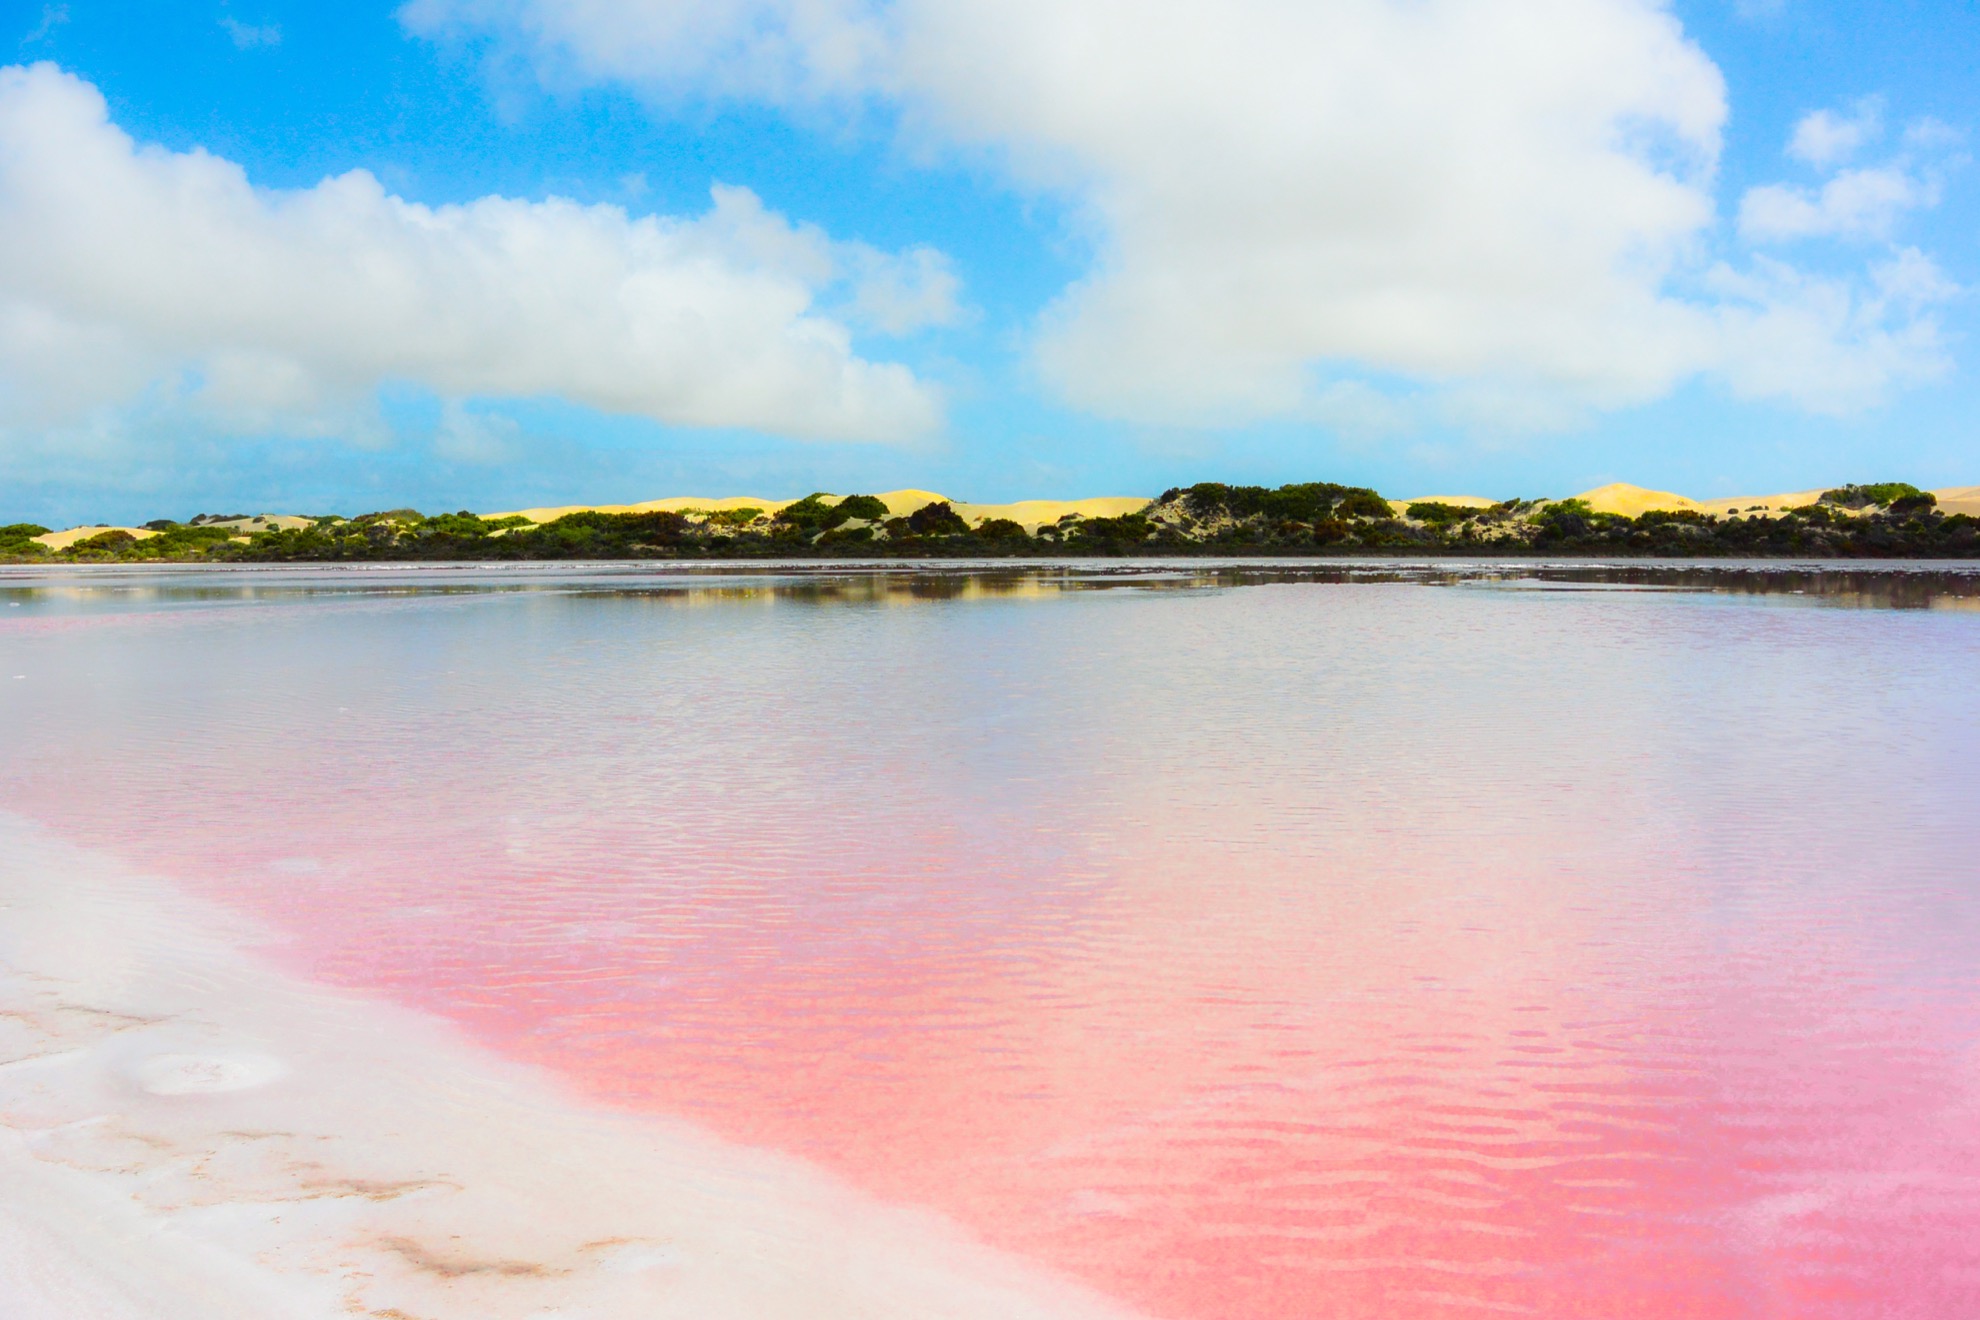 Cómo ver el increíble lago Pink Bubblegum Pink de Australia - 133